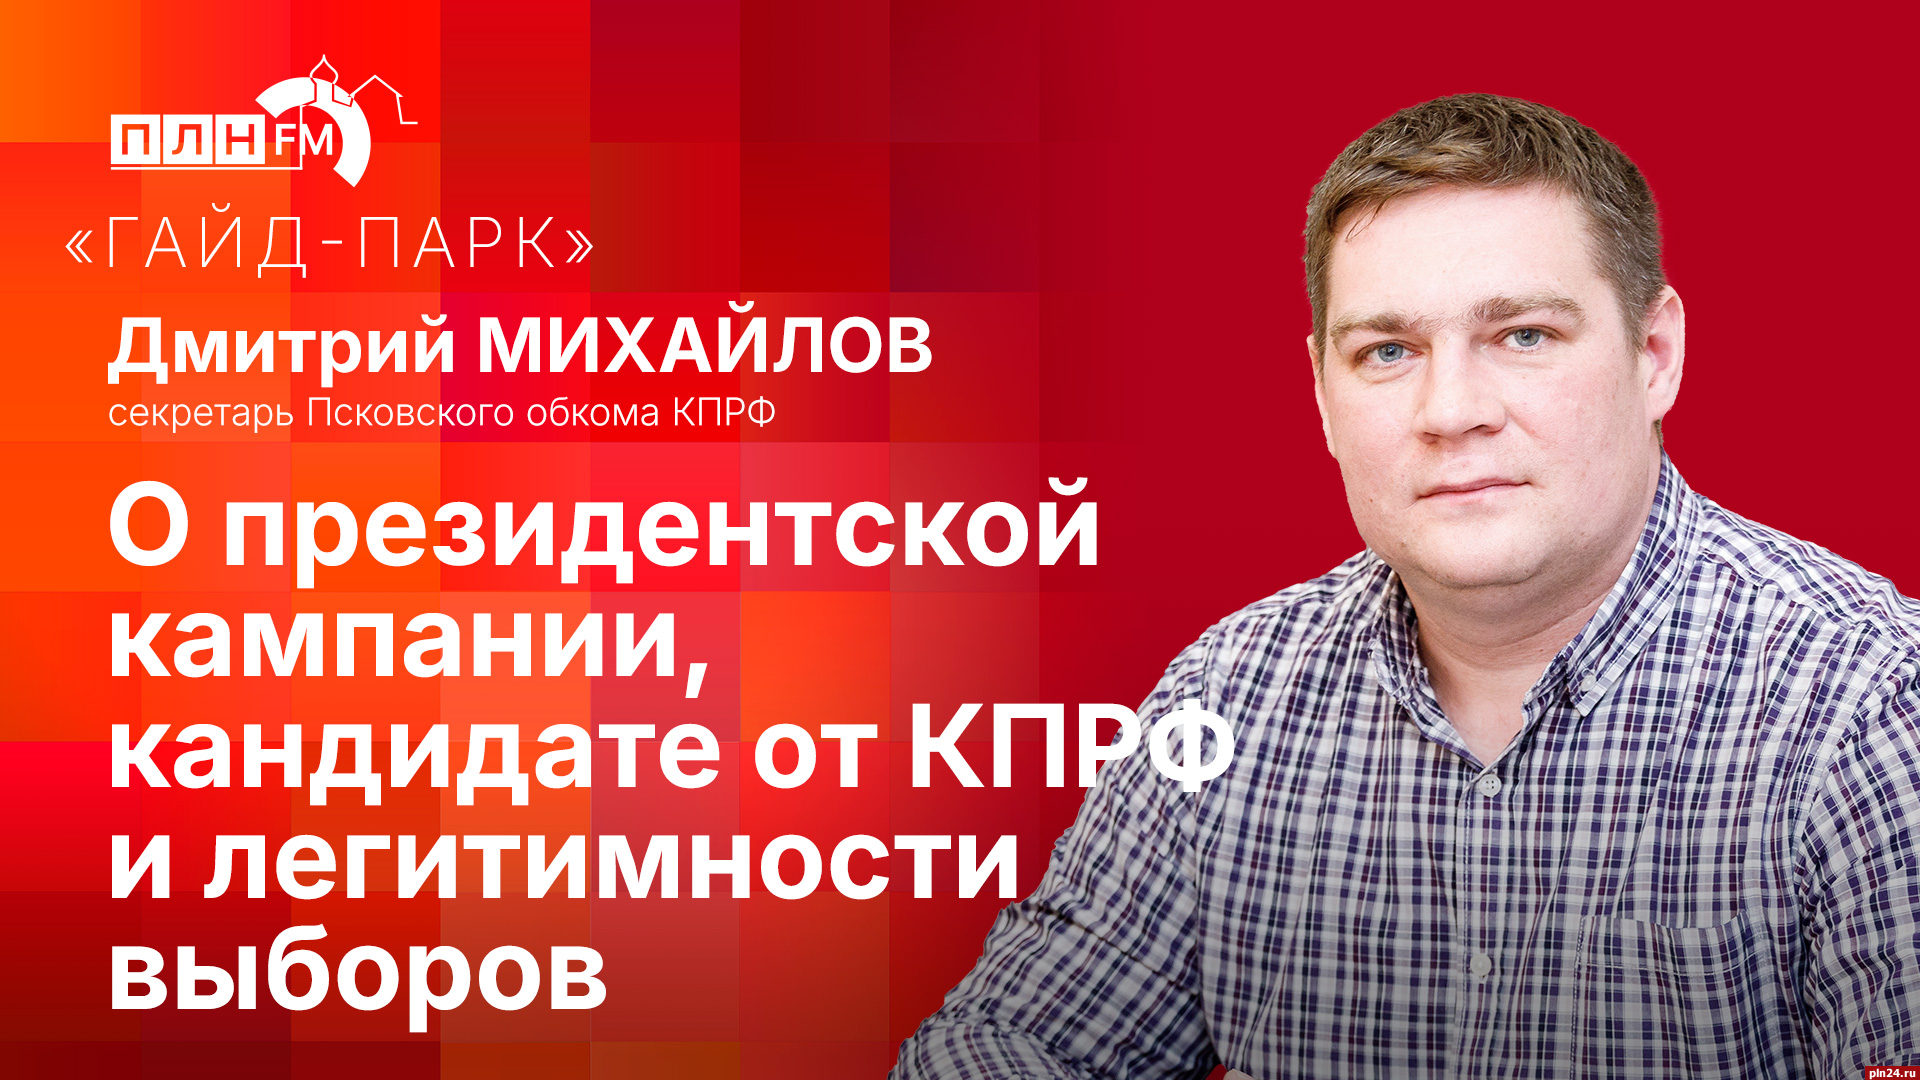 Начинается видеотрансляция программы «Гайд-парк» с депутатом Дмитрием Михайловым